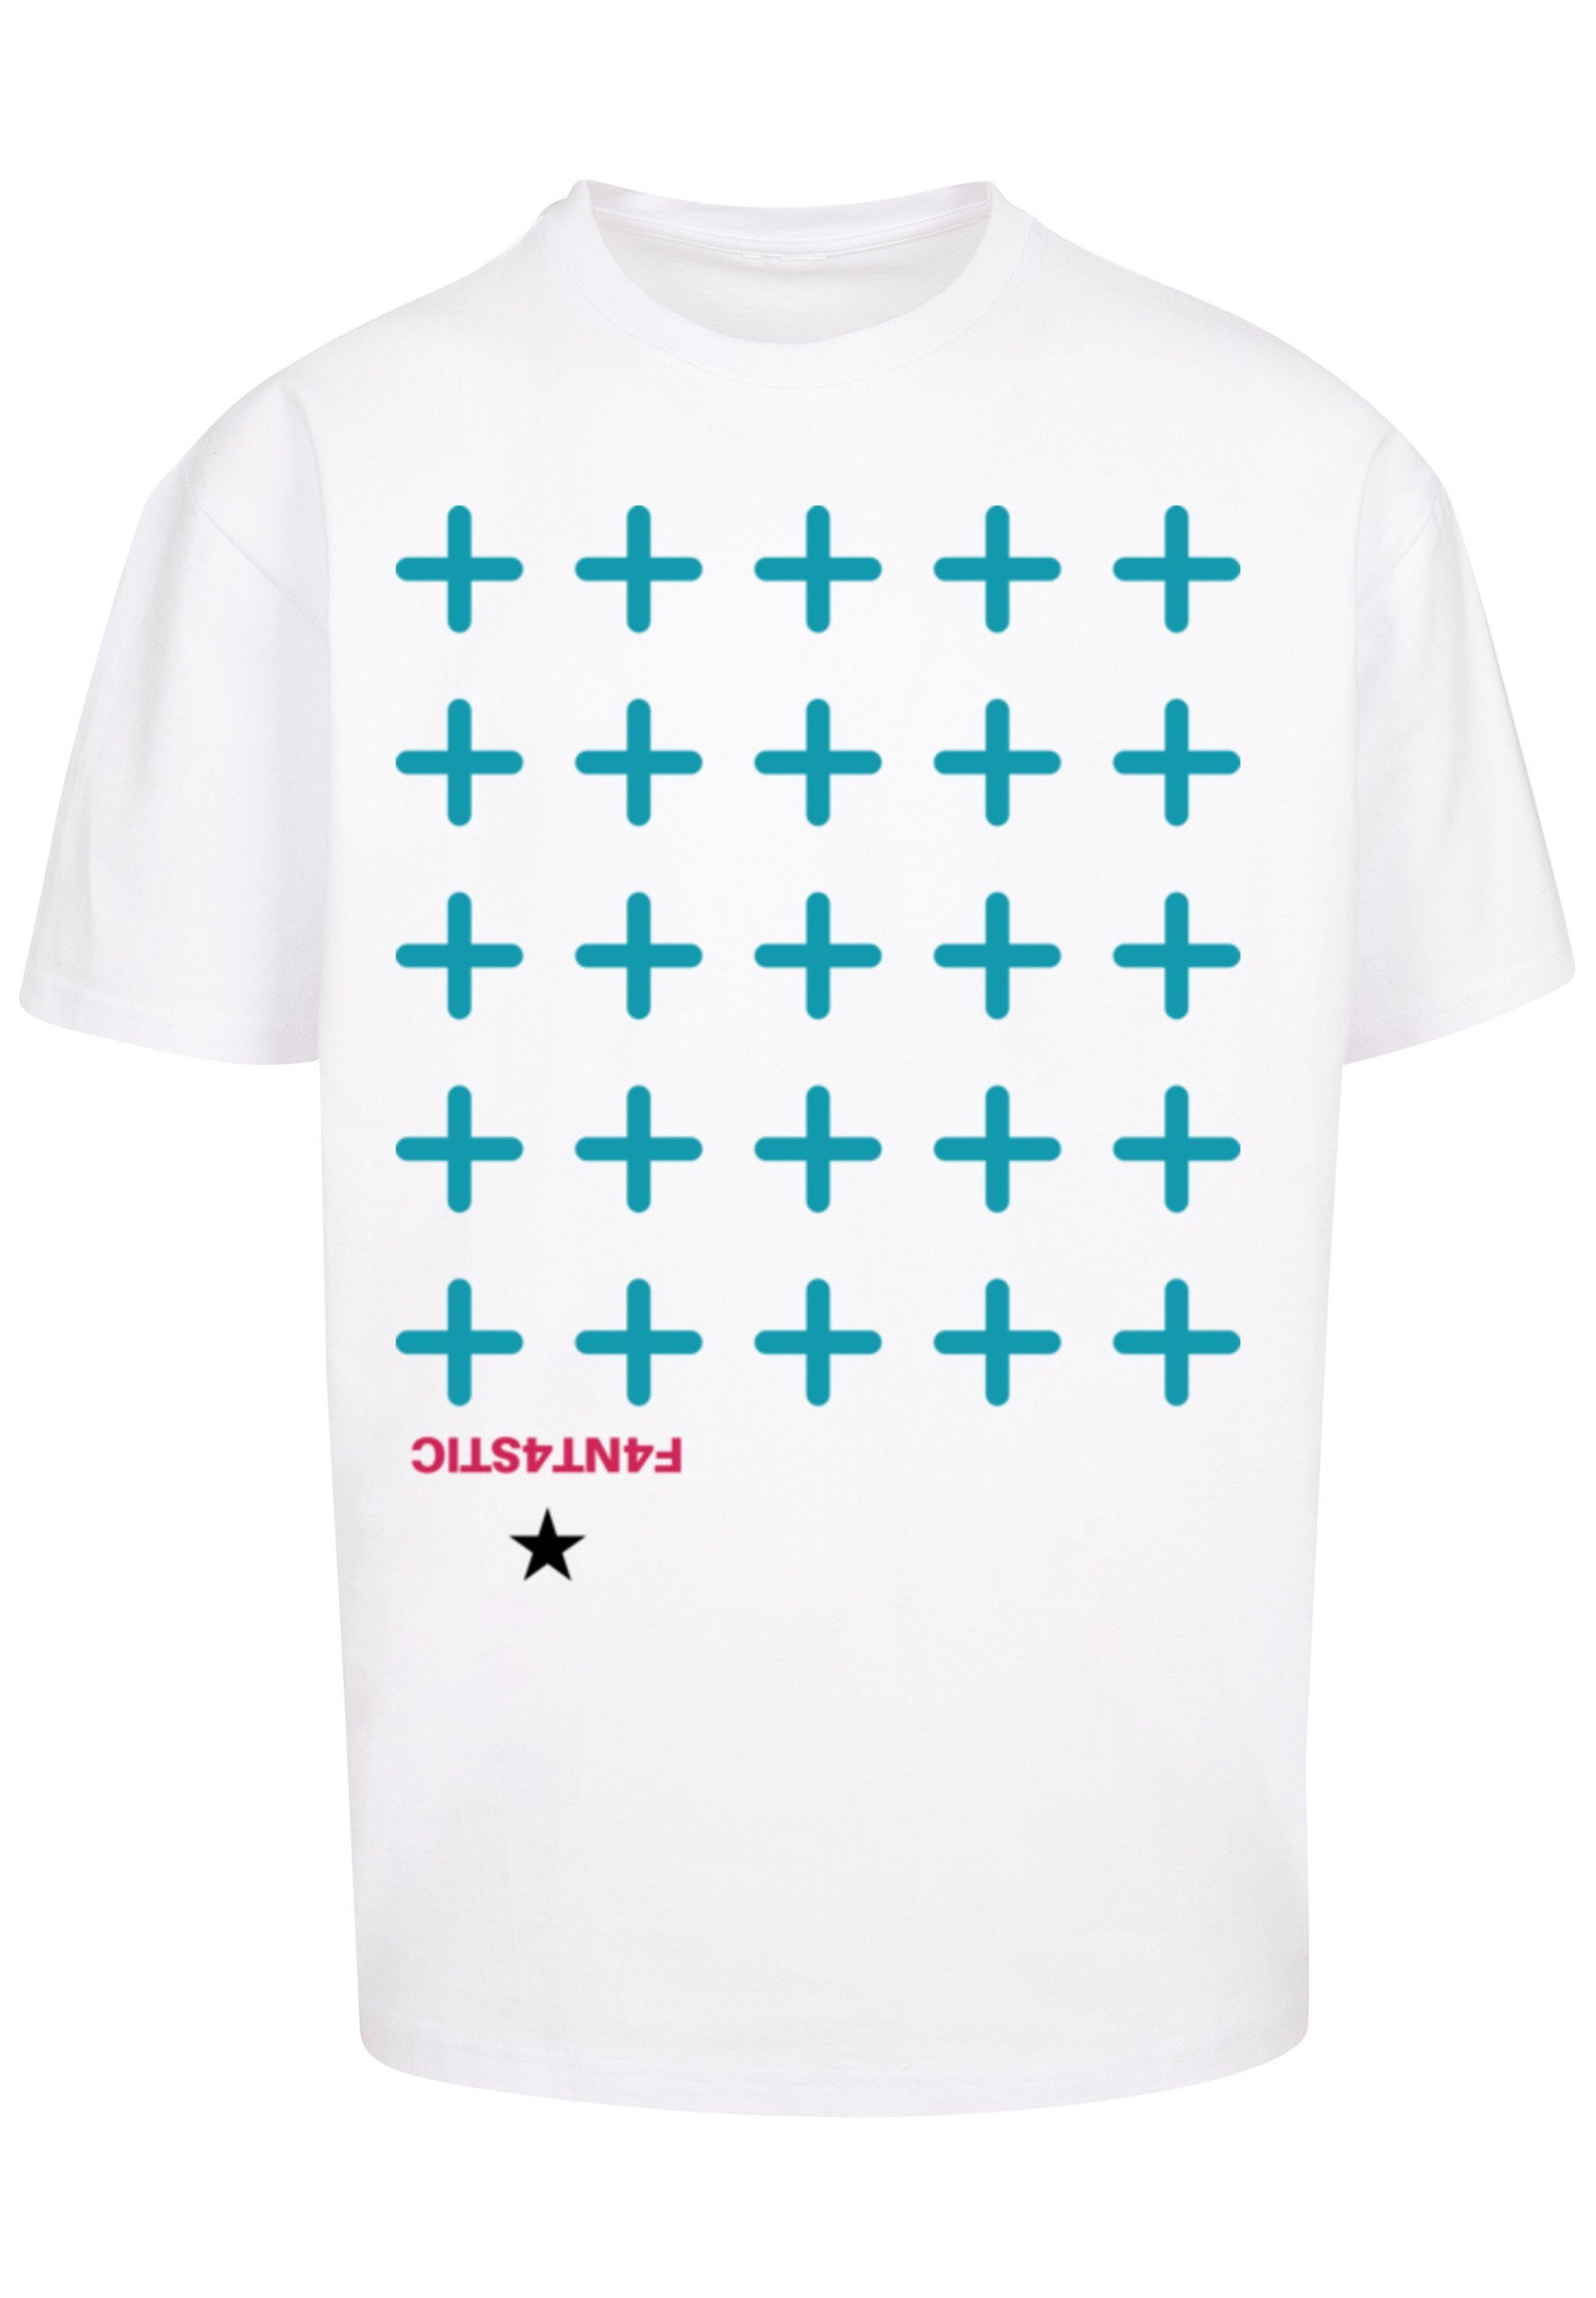 T-Shirt Kreuze Blau weiß Print F4NT4STIC